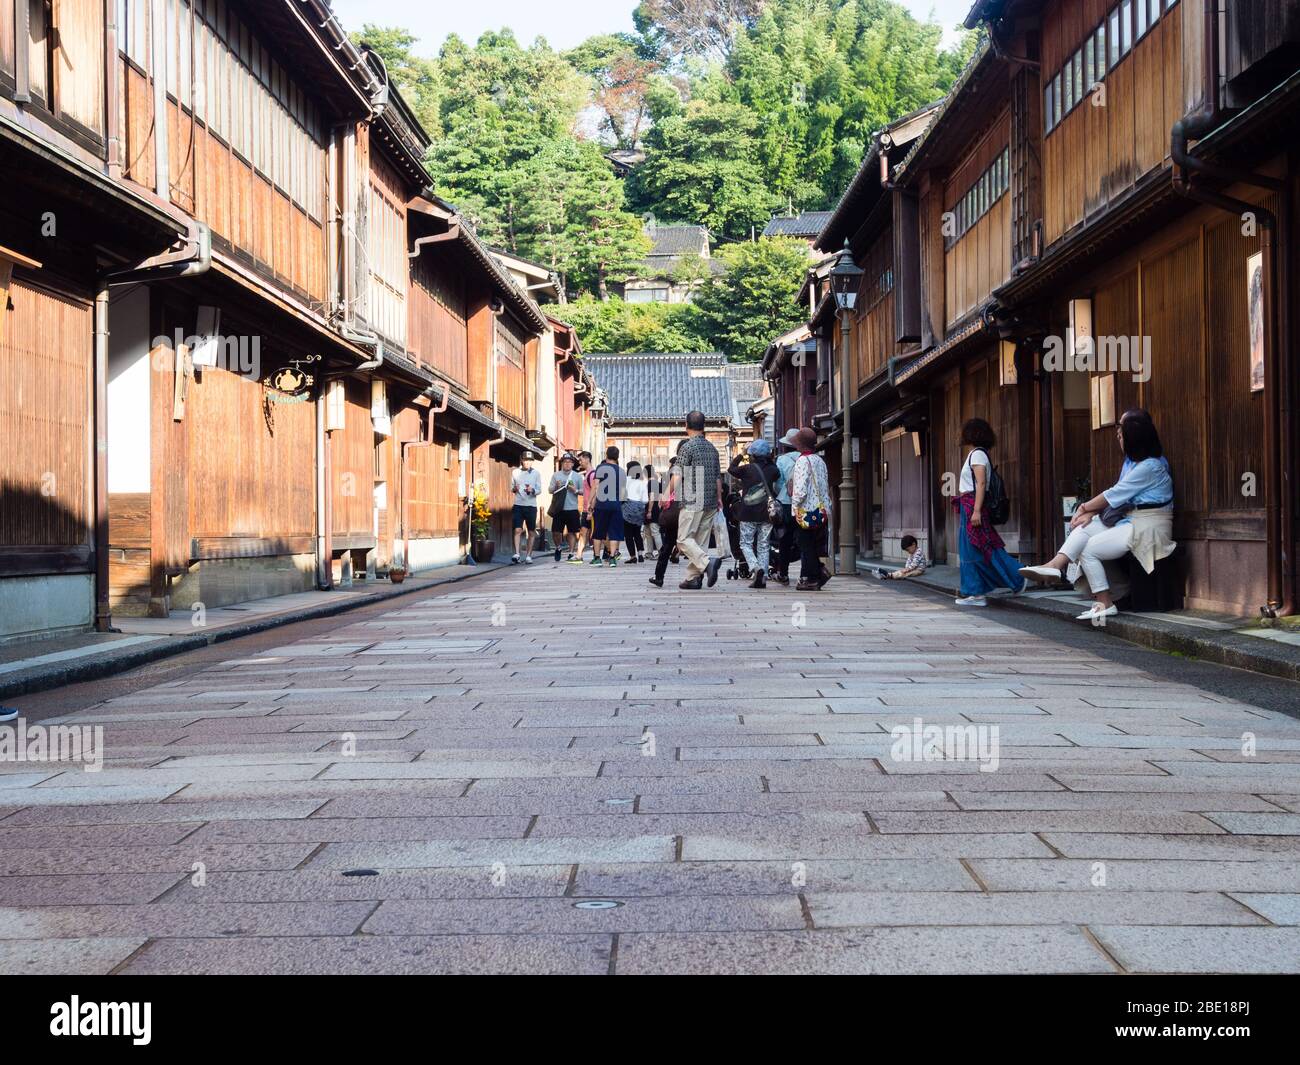 Kanazawa, Japon - 28 septembre 2015 : touristes se promenant le long des rangées de maisons japonaises traditionnelles dans le vieux quartier de Higashi Chaya geisha Banque D'Images